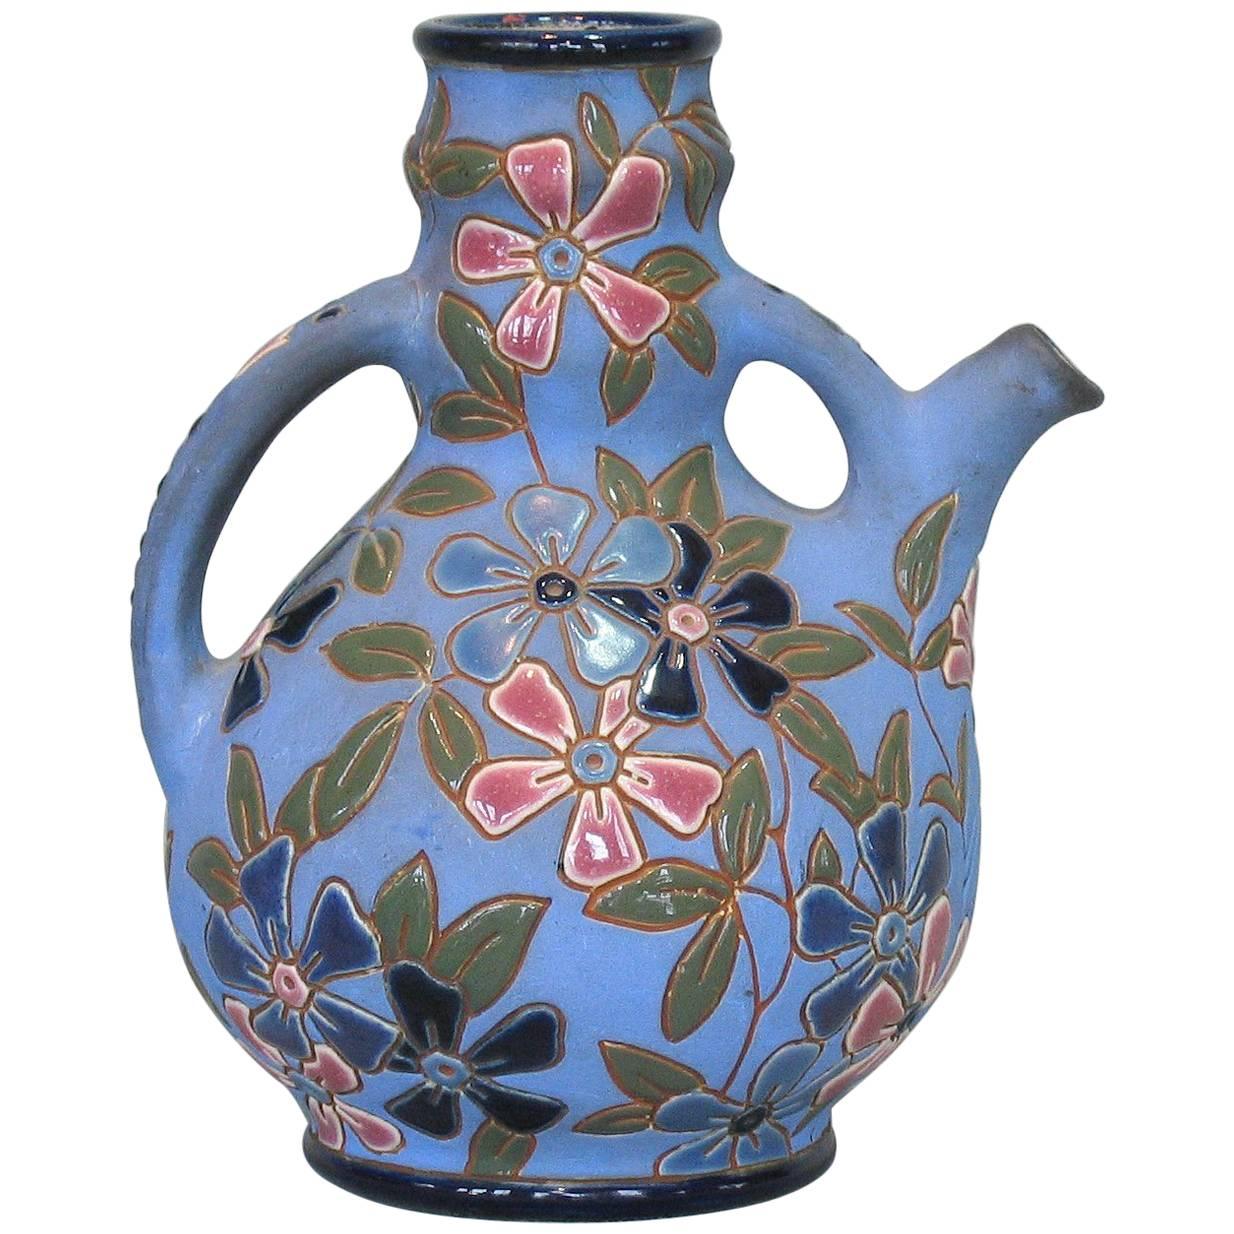 Tschechoslowakischer Krug aus glasiertem Steingut von Amphora, ca. 1918-1939